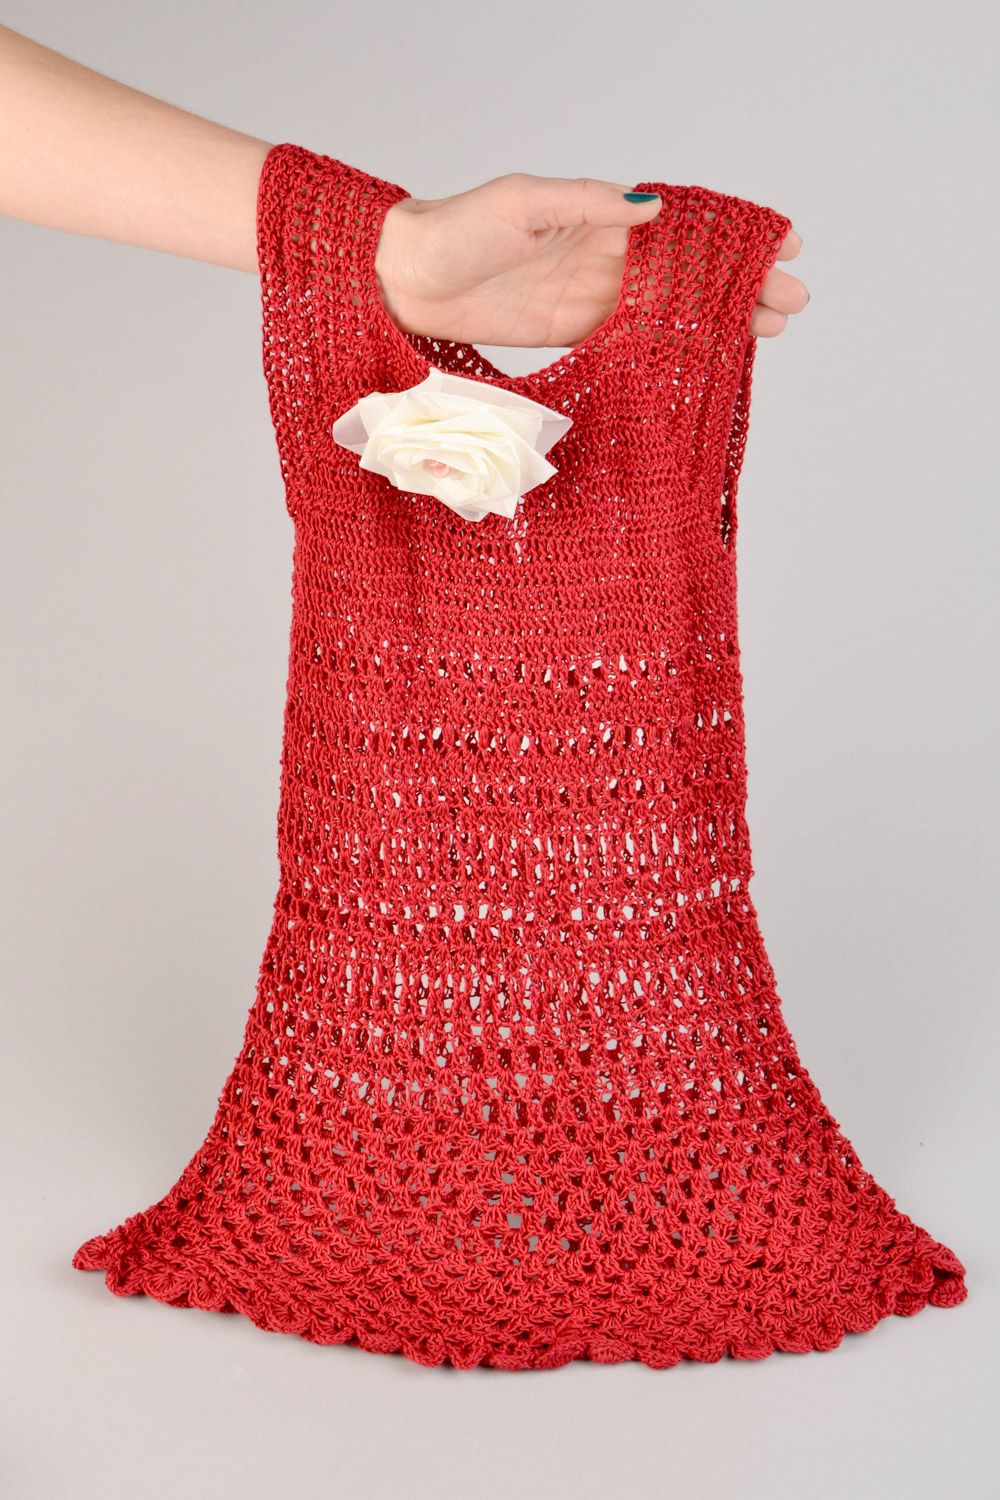 Детское вязаное платье без рукавов красное нарядное с розой ручная работа  фото 1